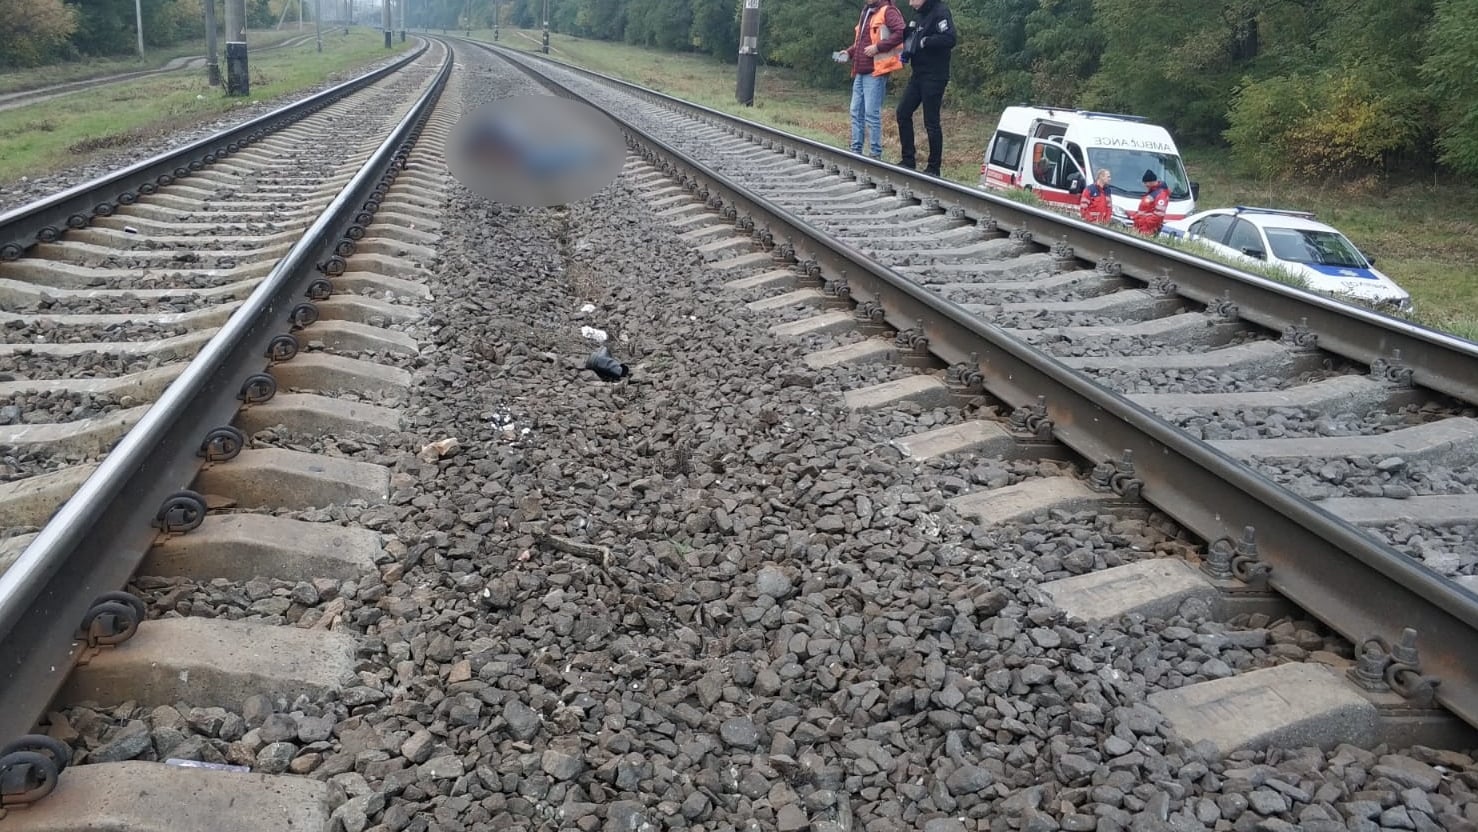 На железнодорожной станции “Тарасовка” на Киевщине женщина попала под поезд (фото)